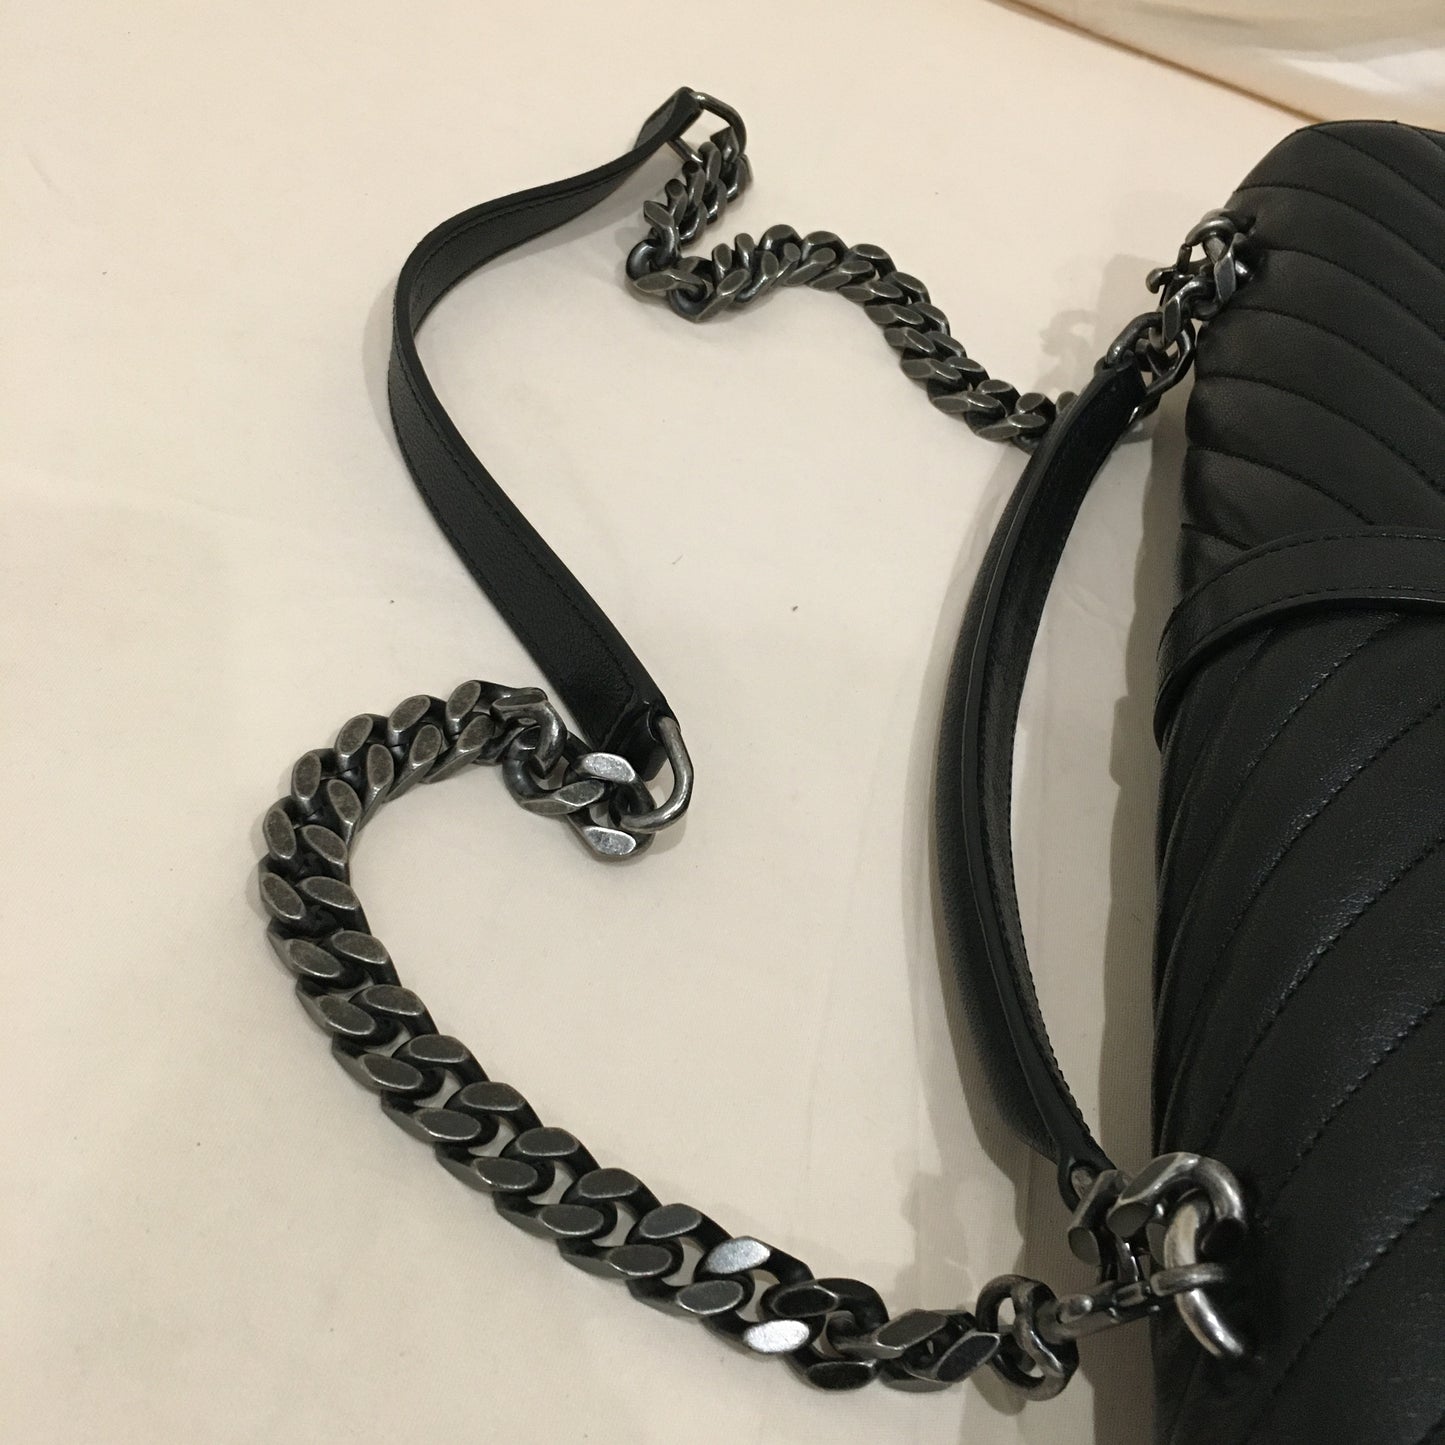 Yves Saint Laurent Black Leather Large College Bag Sku# 70466